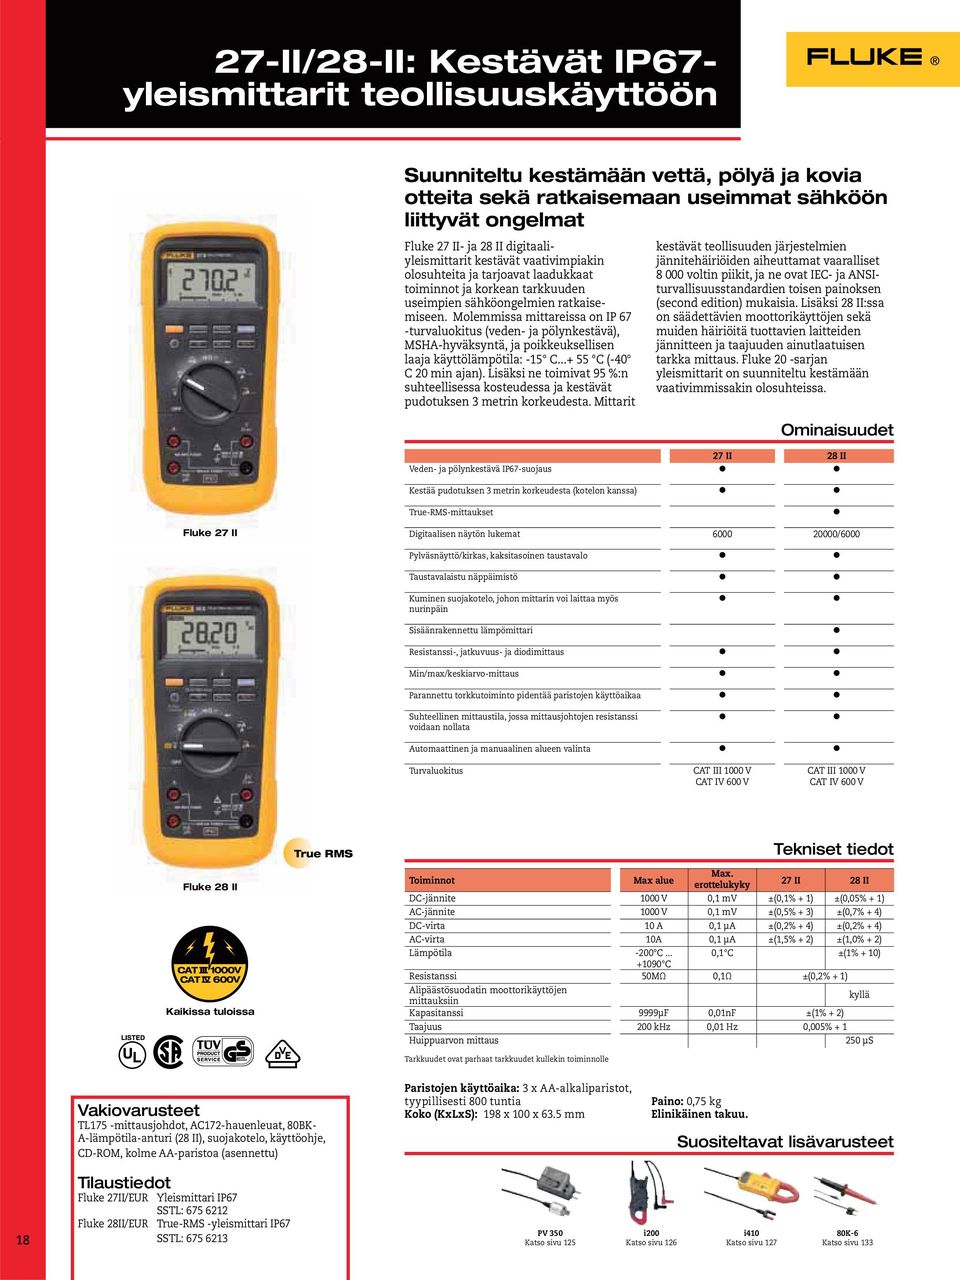 Molemmissa mittareissa on IP 67 -turvaluokitus (veden- ja pölynkestävä), MSHA-hyväksyntä, ja poikkeuksellisen laaja käyttölämpötila: -15 C...+ 55 C (-40 C 20 min ajan).